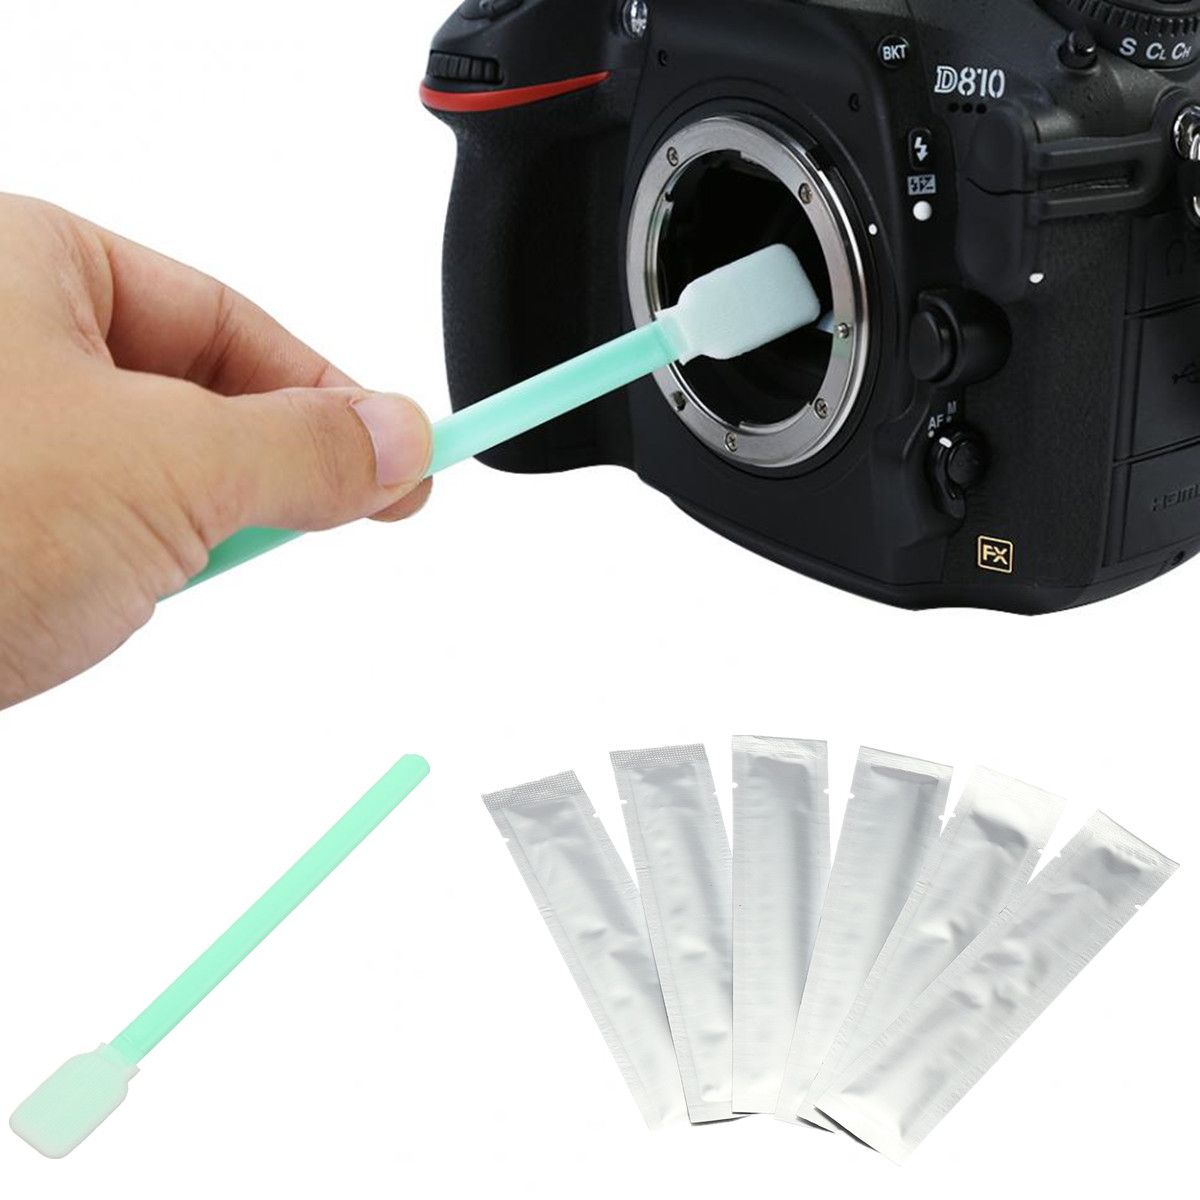 6Pcs-Wet-Sensor-Lens-Cleaning-Stick-CMOS-CCD-Cleaner-Swab-For-Camera-DSLR-SLR-1427513